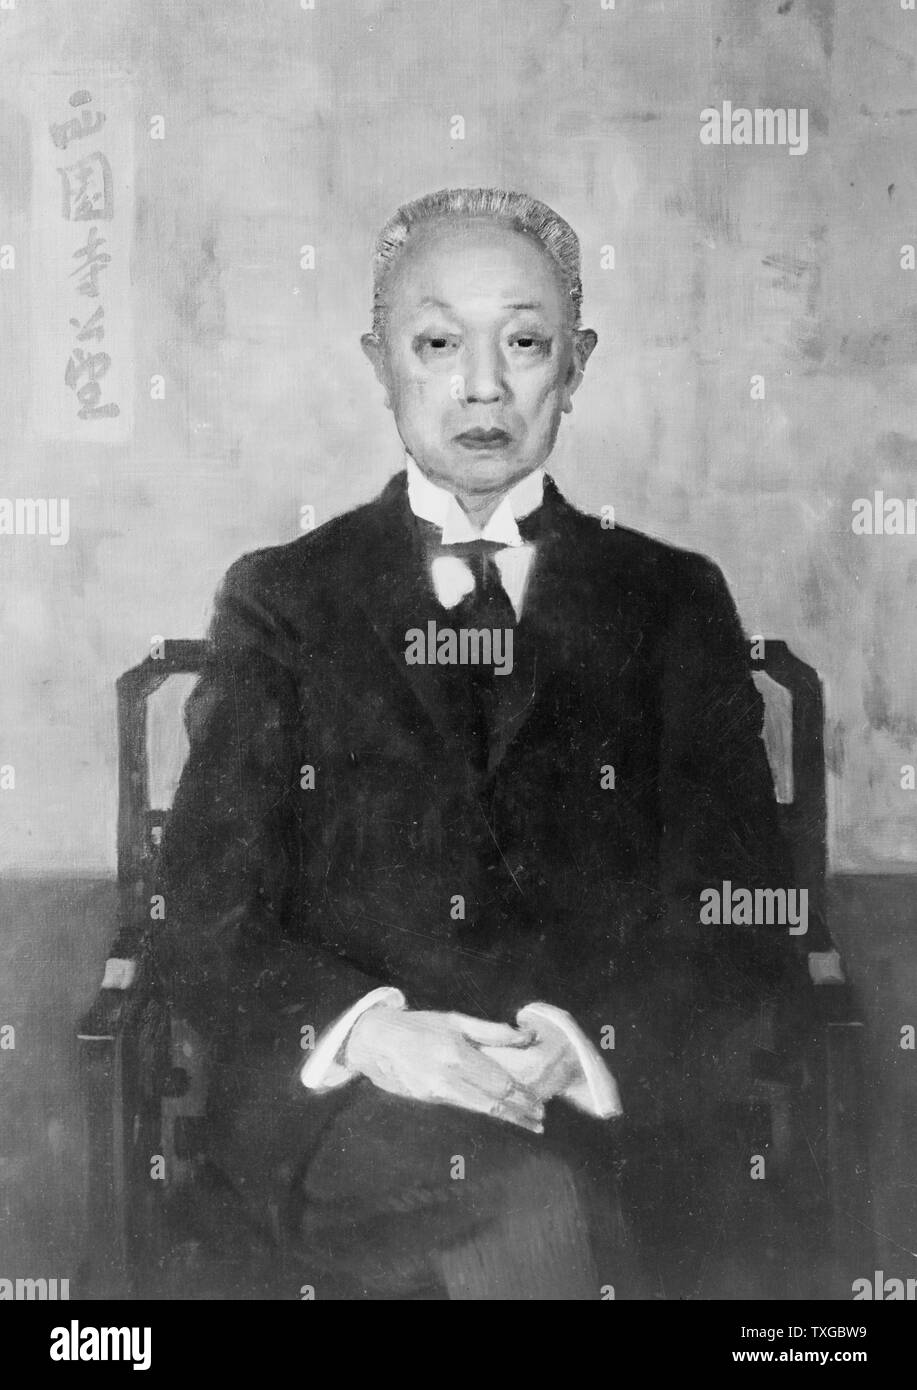 Prince Saionji Kinmochi (Décembre 7, 1849 - 24 novembre 1940) était un homme politique japonais, homme d'État et deux fois Premier Ministre du Japon. Son titre ne signifie pas que le fils d'un empereur, mais le plus haut rang de la noblesse héréditaire, il a été élevé de marquis de prince en 1920. Comme le dernier survivant genro, il était le plus honoré du Japon plus des années 1920 et 1930. Banque D'Images